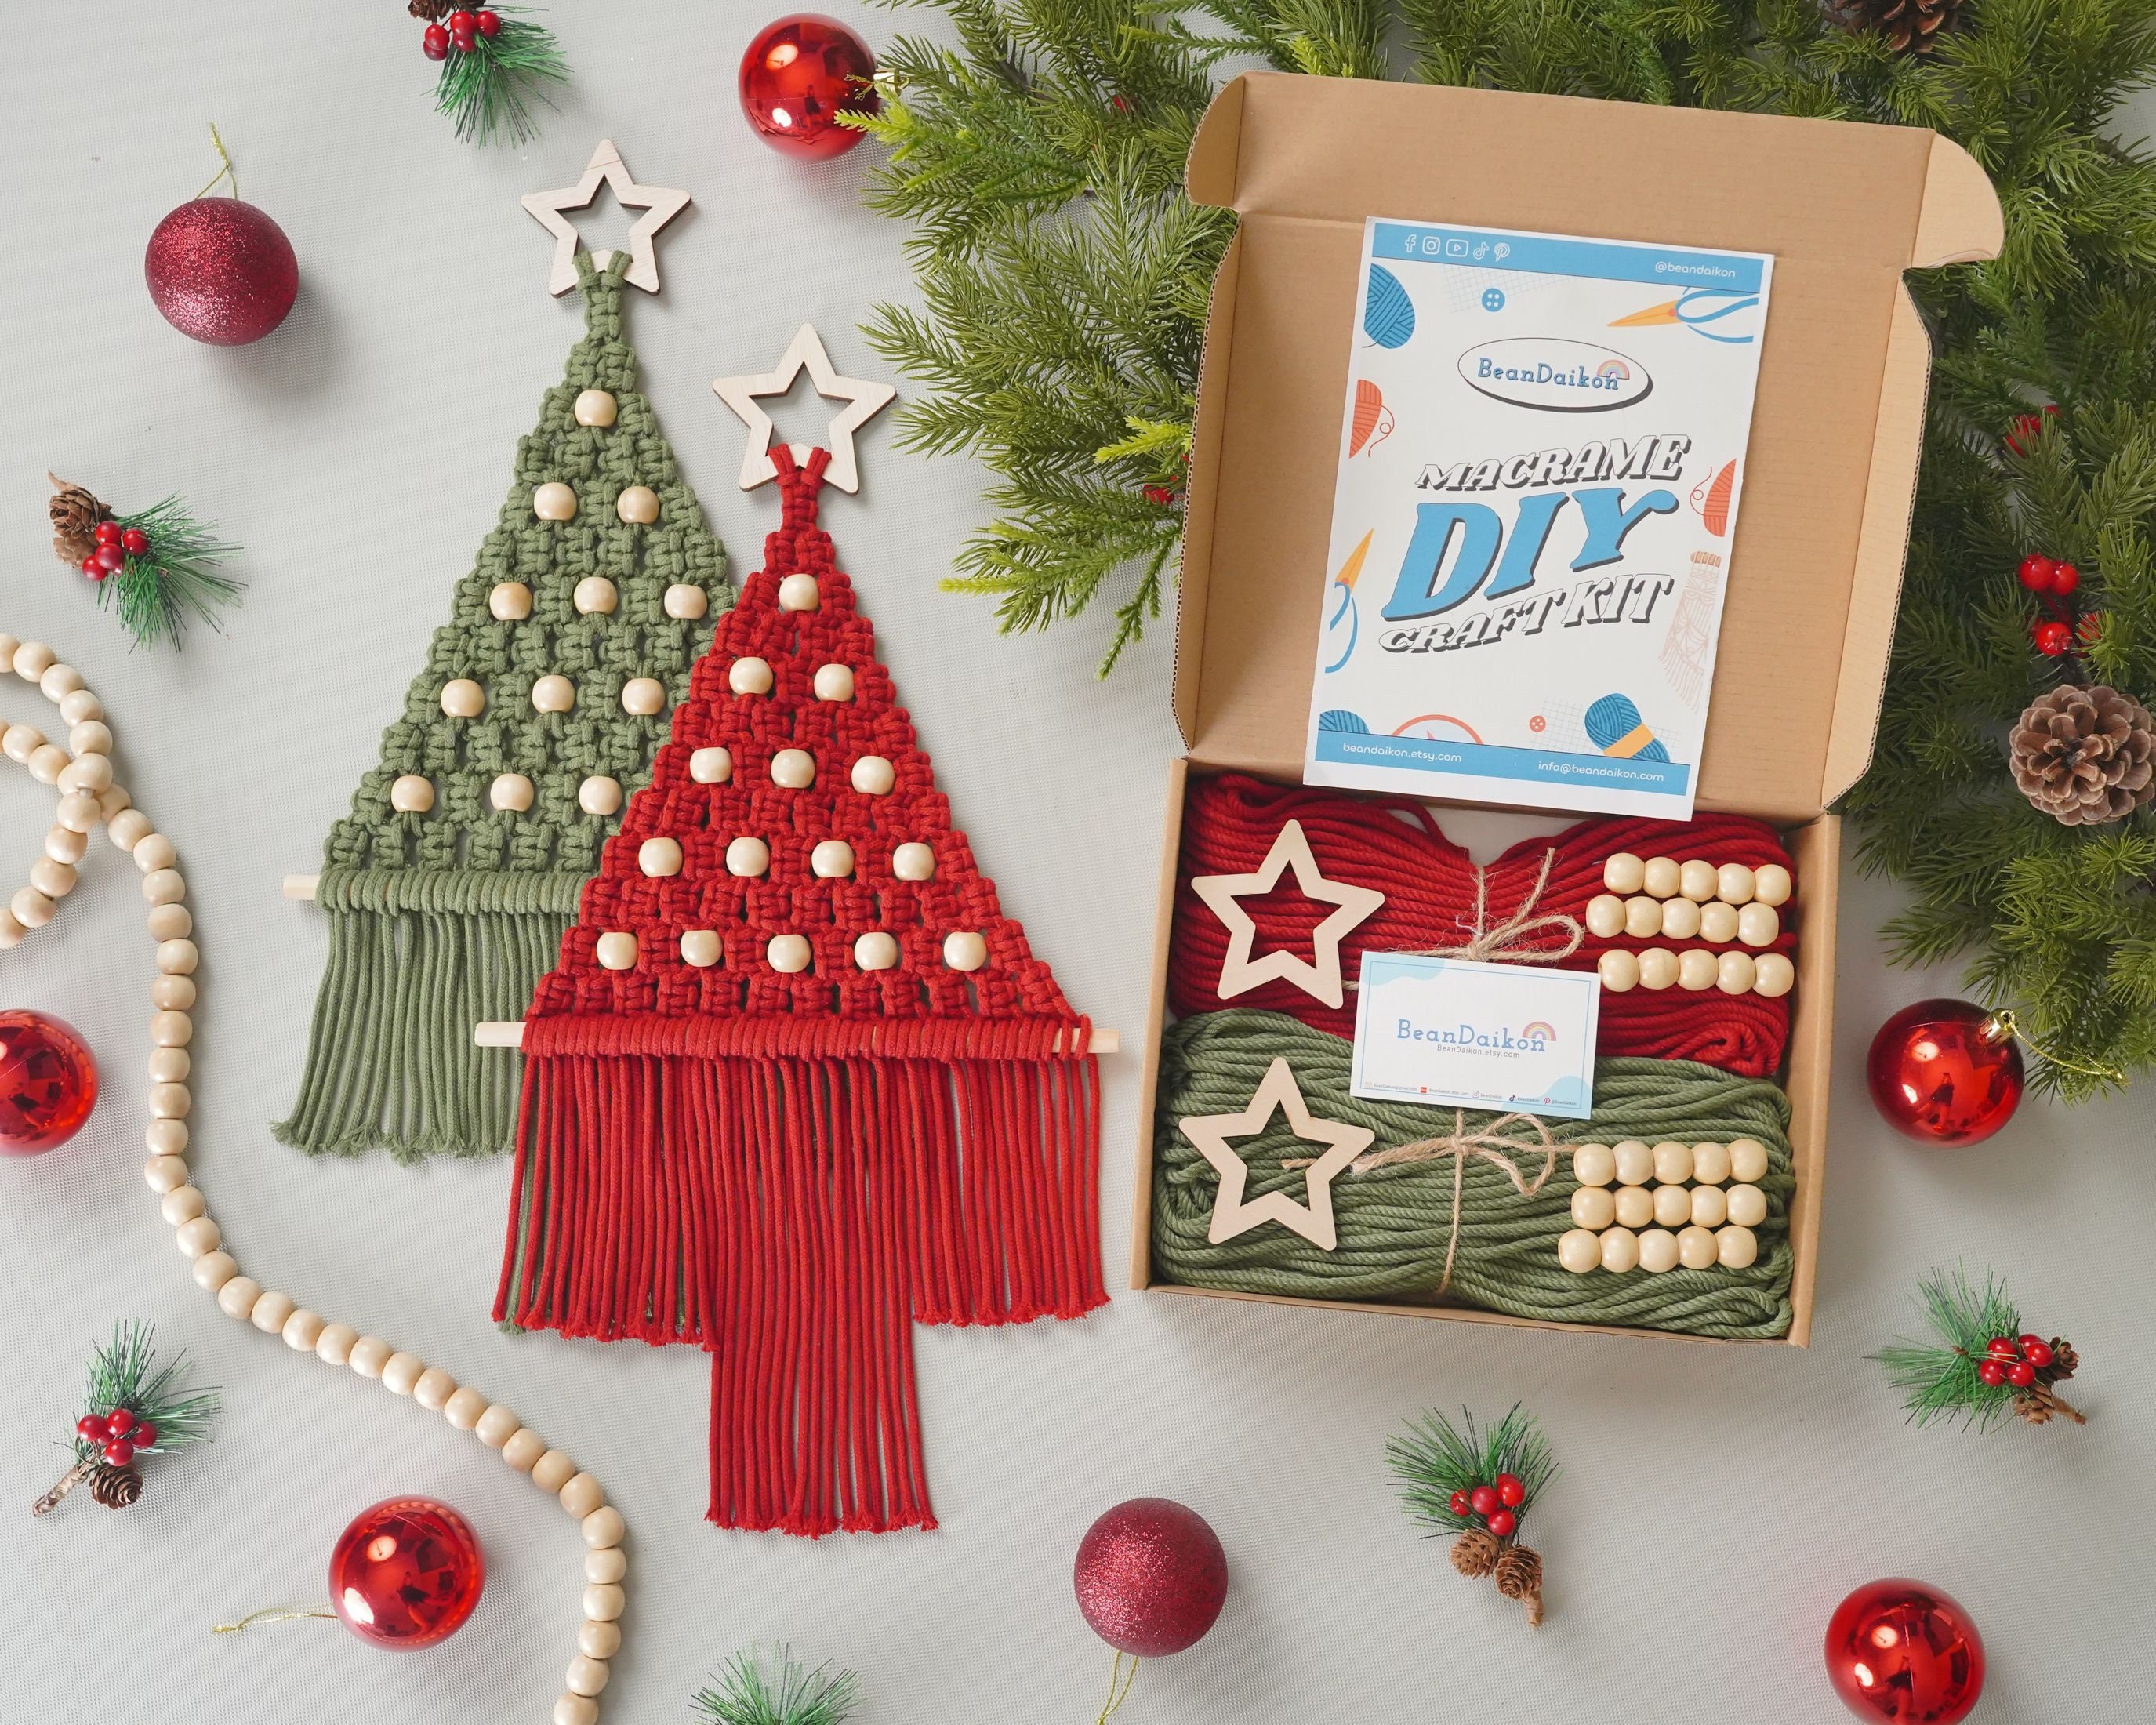 DIY Christmas Kit, Christmas Tree Kit, Macrame Christmas